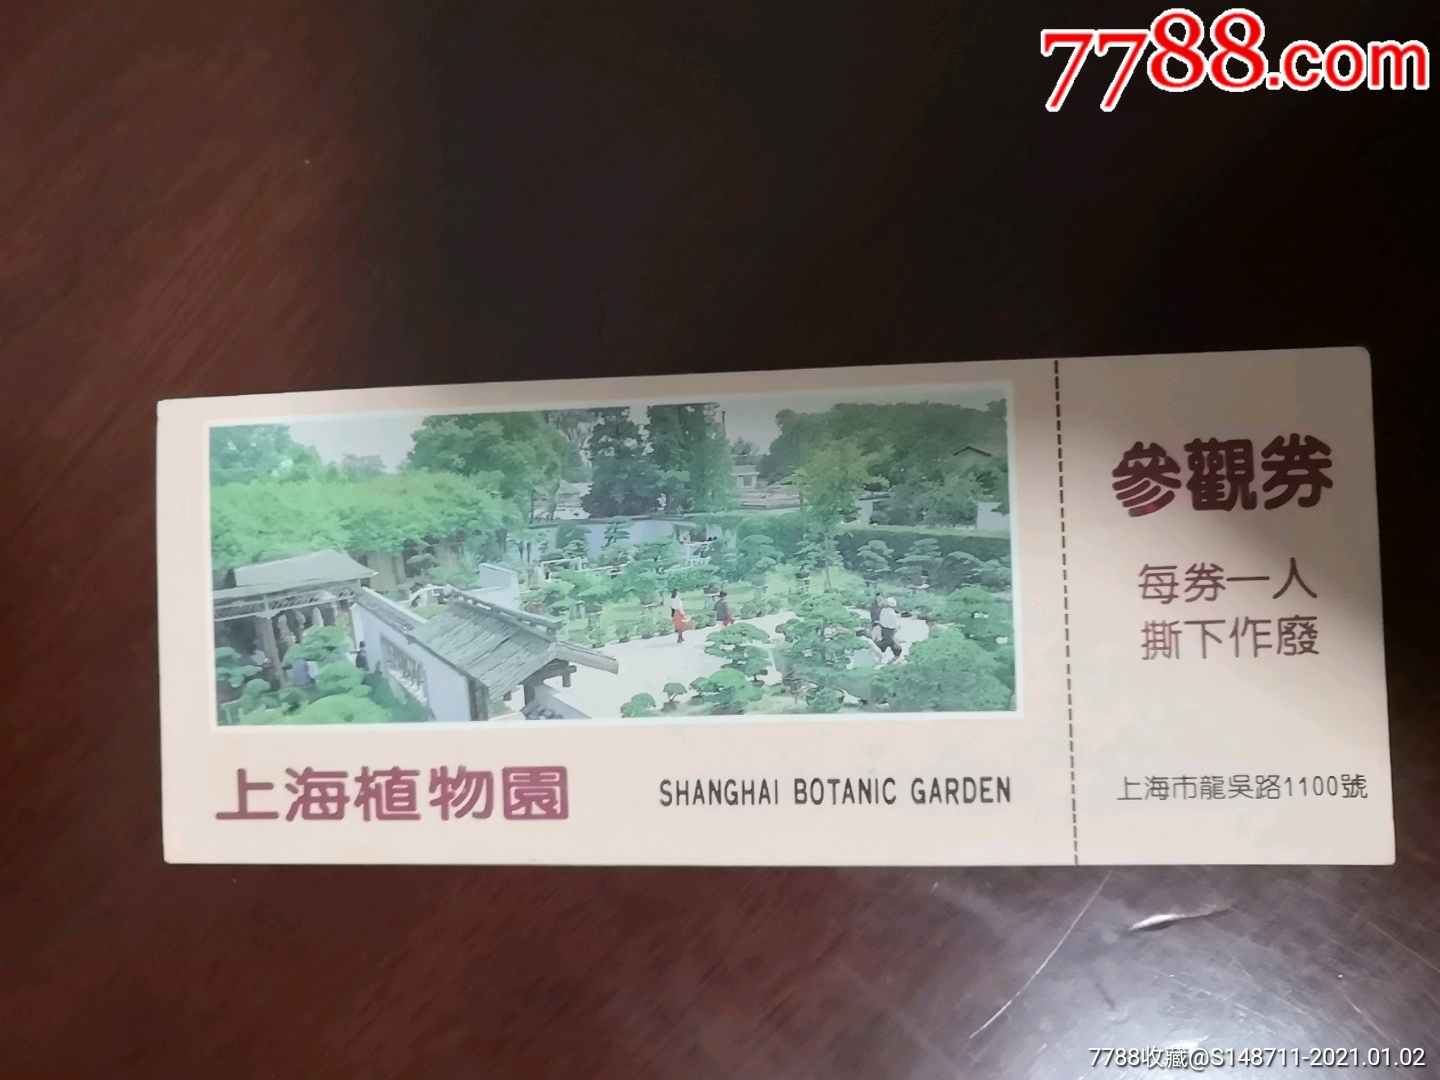 上海辰山植物园65岁免票_上海辰山植物园优惠门票_